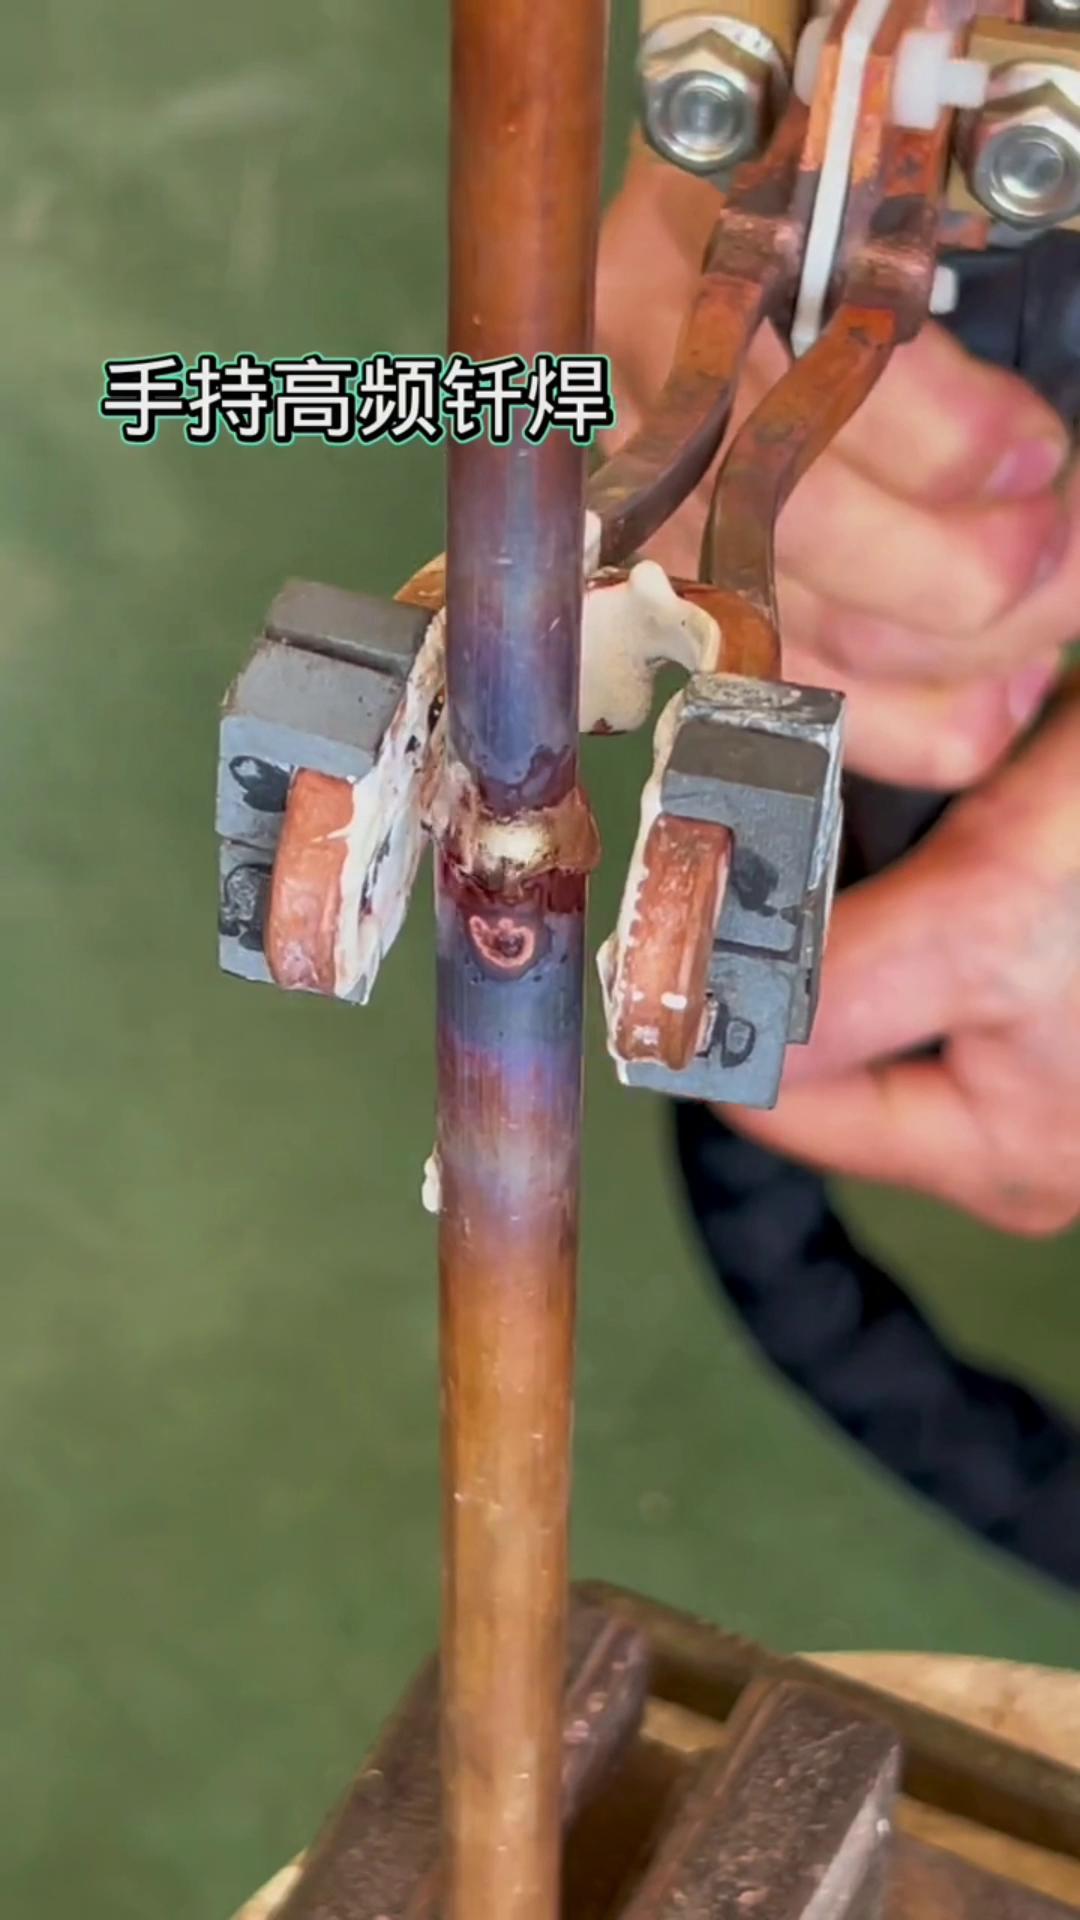 手持式高频焊接机 铜管焊接无明火更安全环保